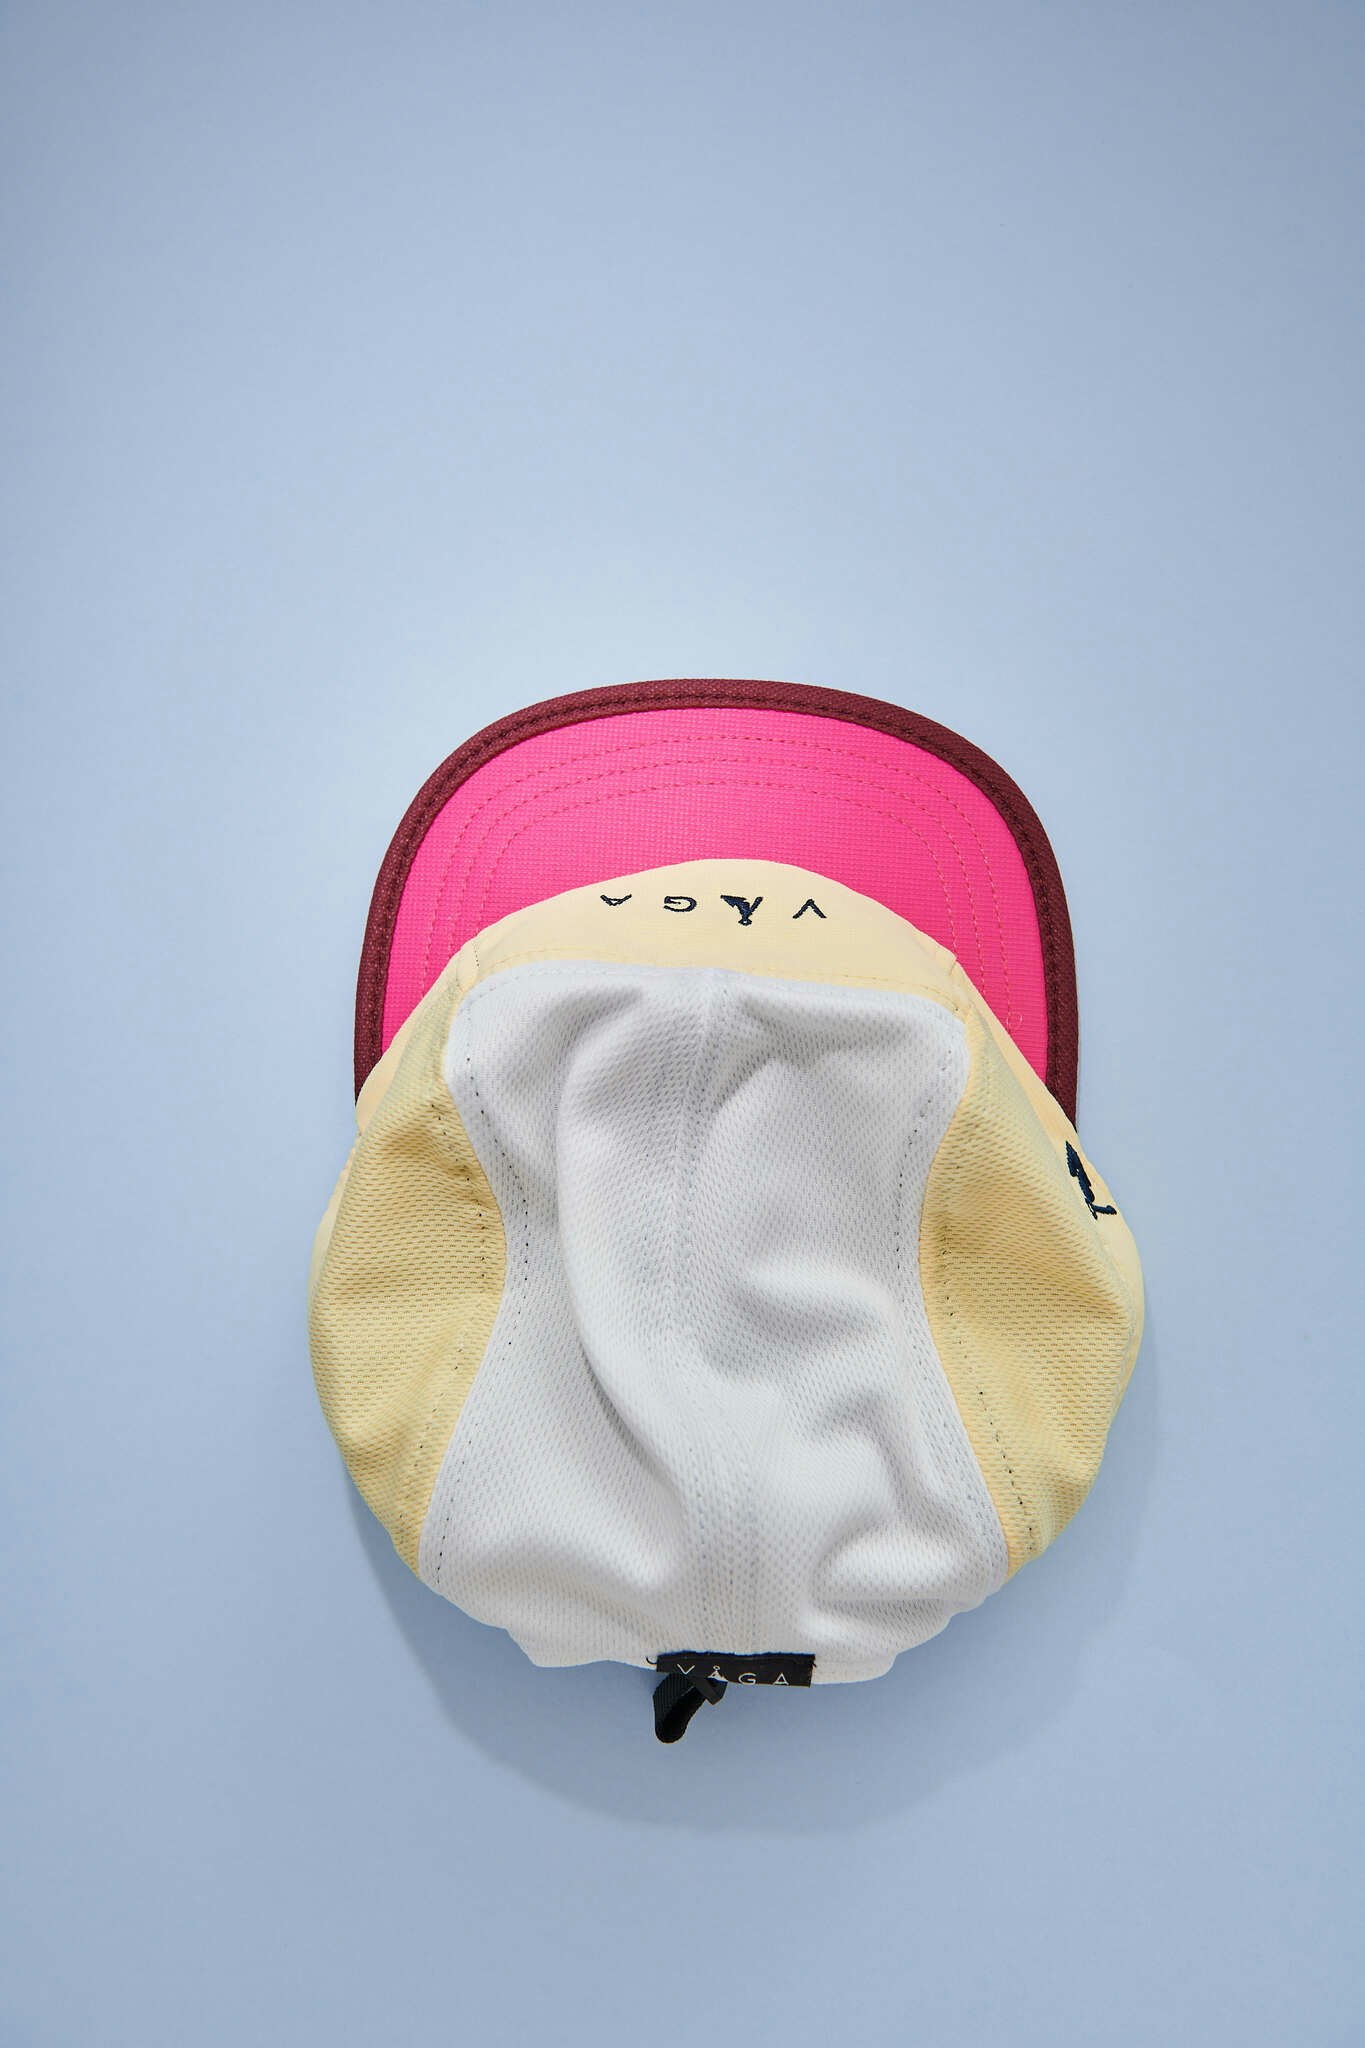 Våga Club Cap - Poster Pink/Pale Yellow/White Bordo